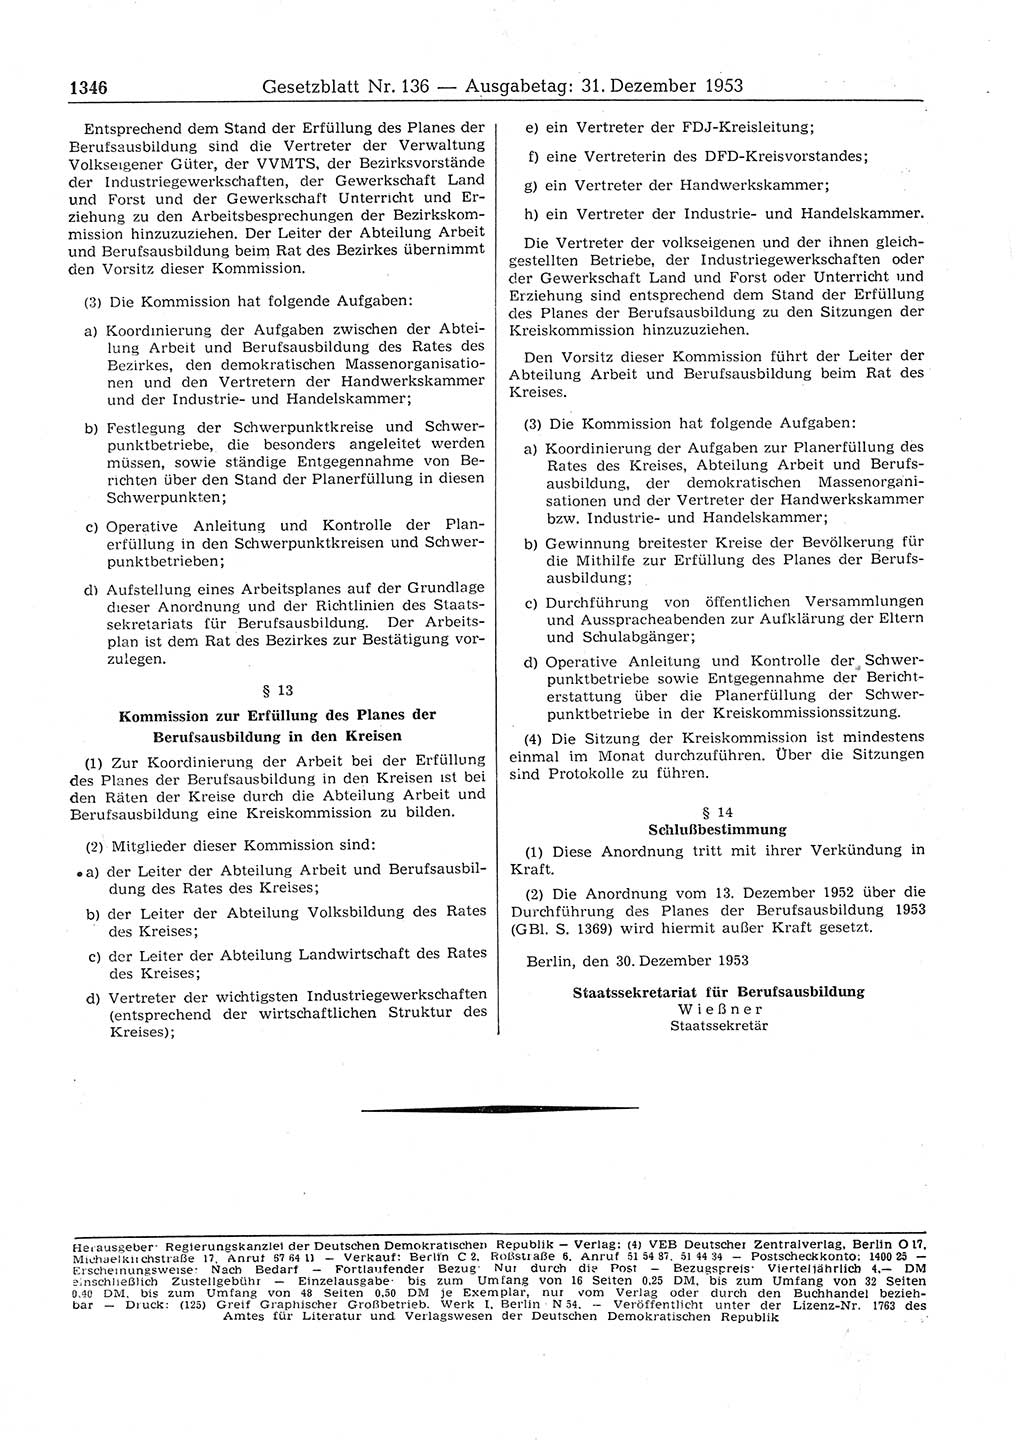 Gesetzblatt (GBl.) der Deutschen Demokratischen Republik (DDR) 1953, Seite 1346 (GBl. DDR 1953, S. 1346)